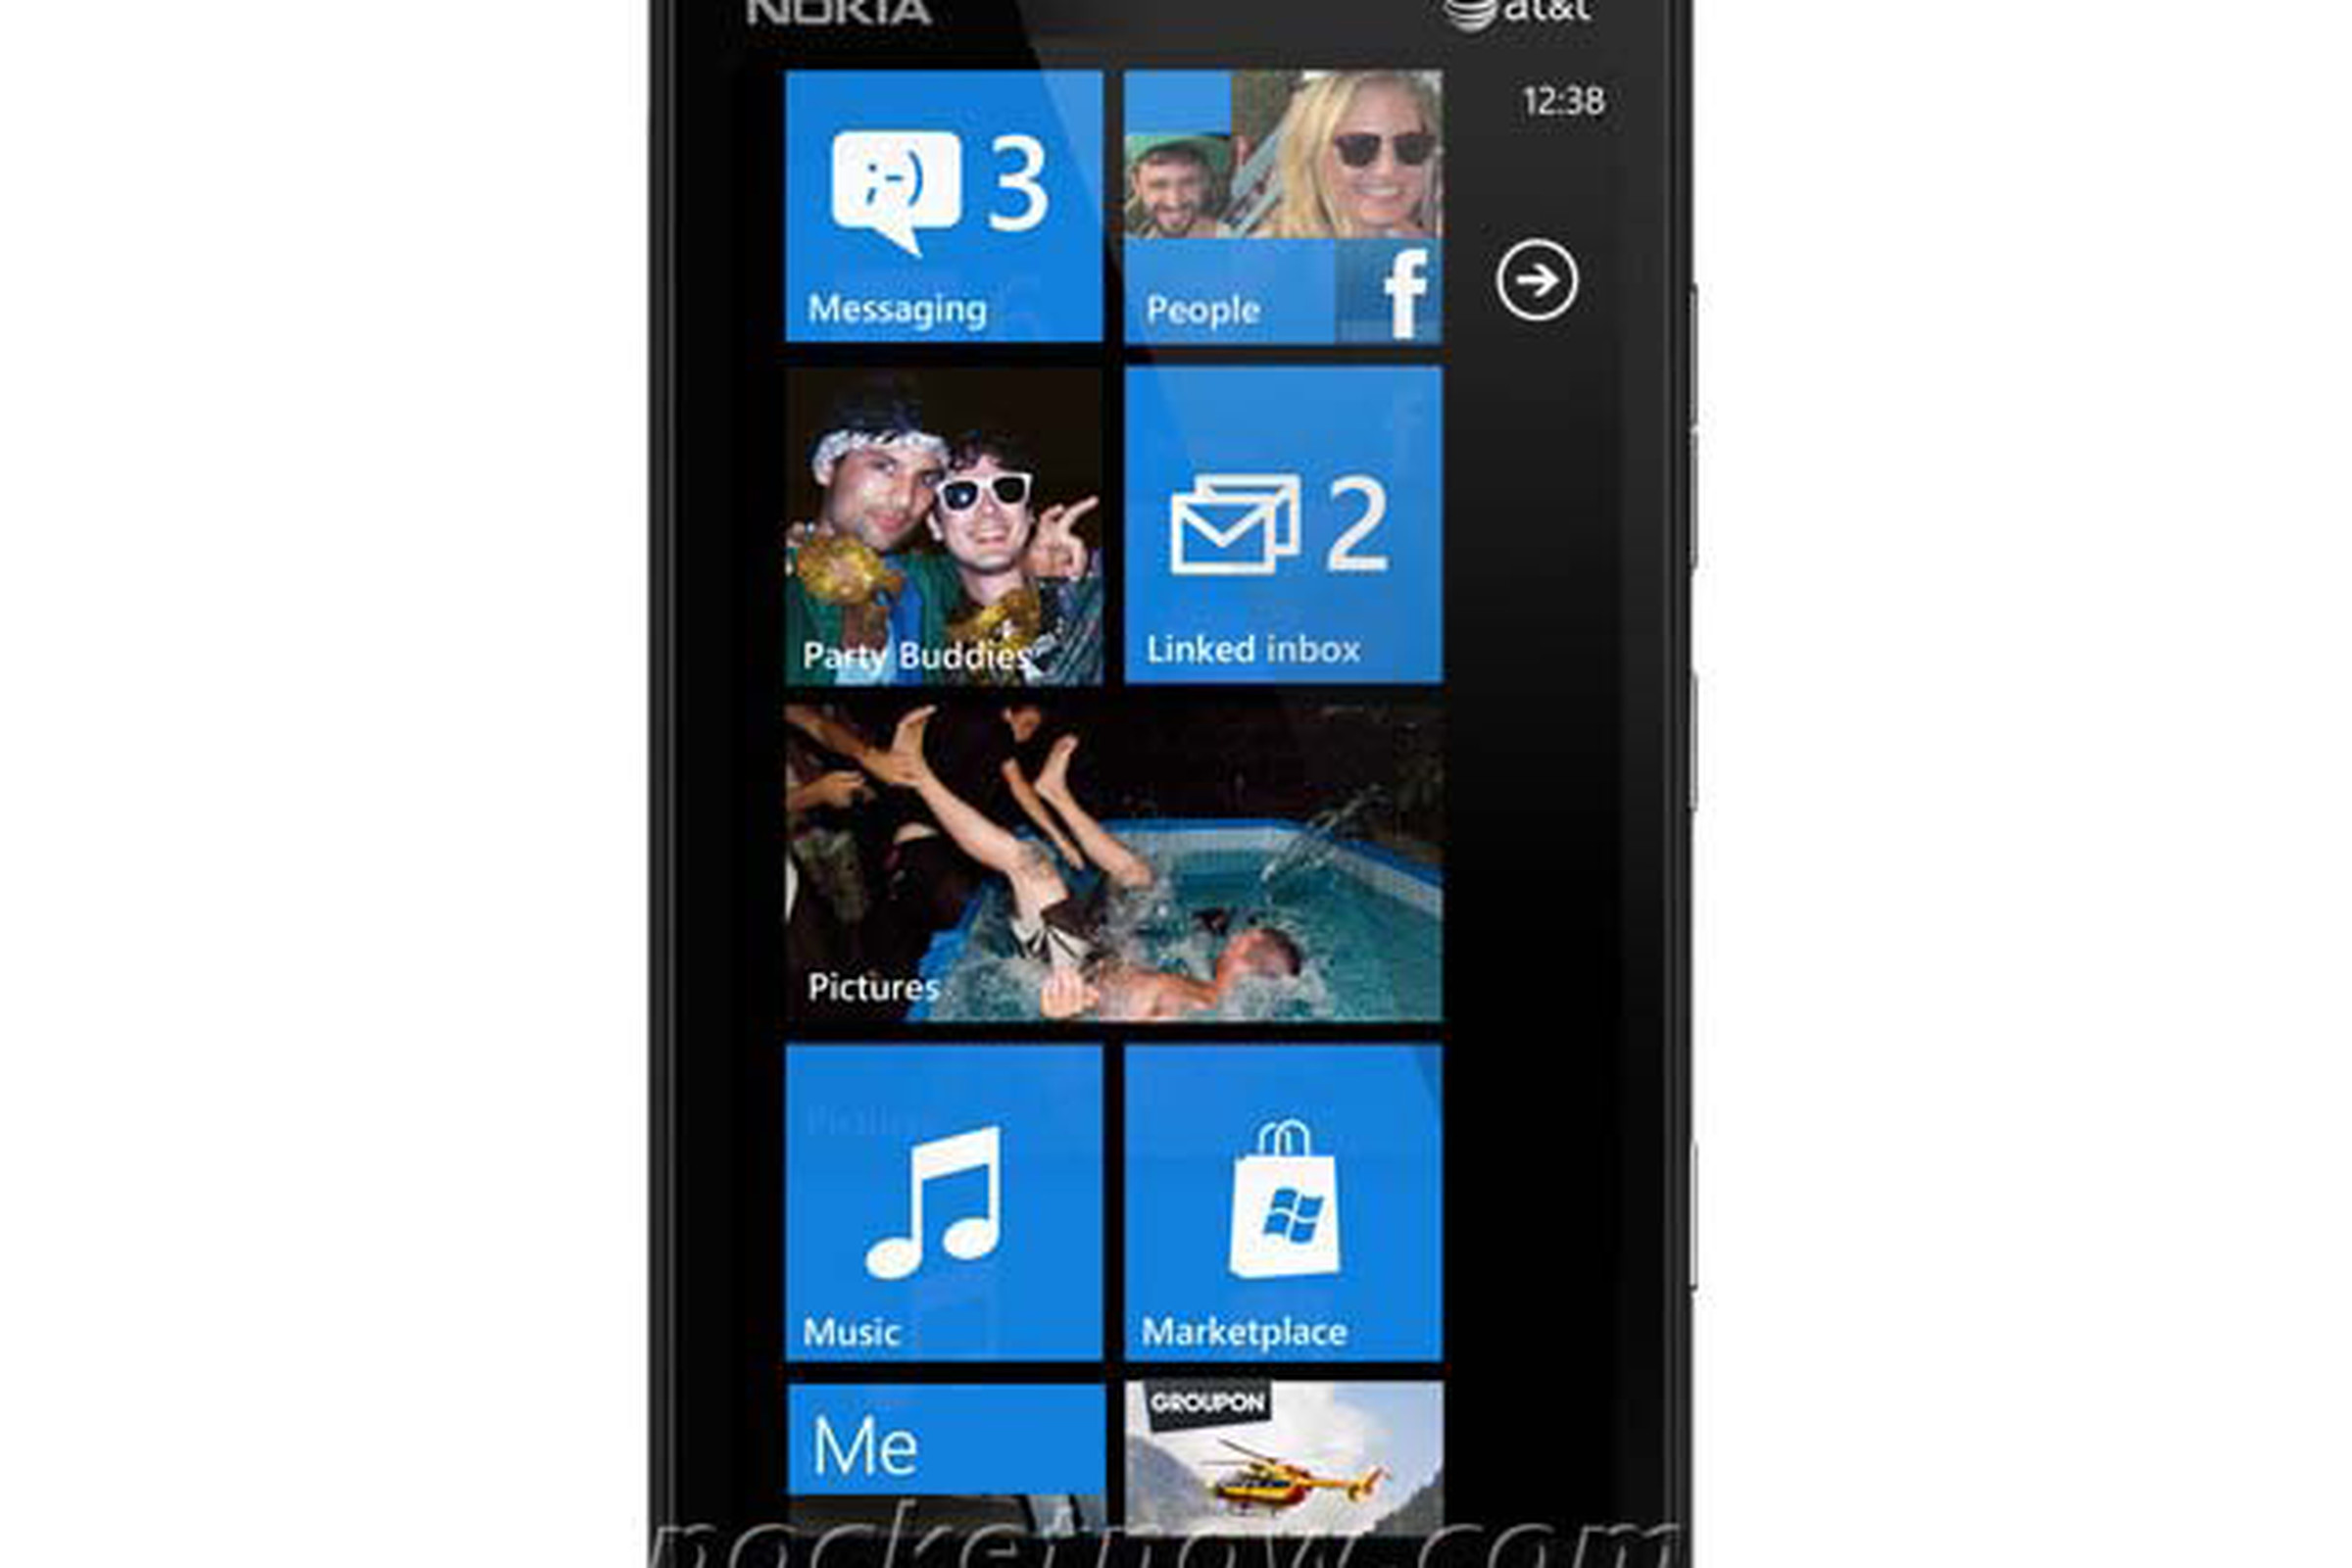 Nokia Lumia 900 "Ace" Image Leak